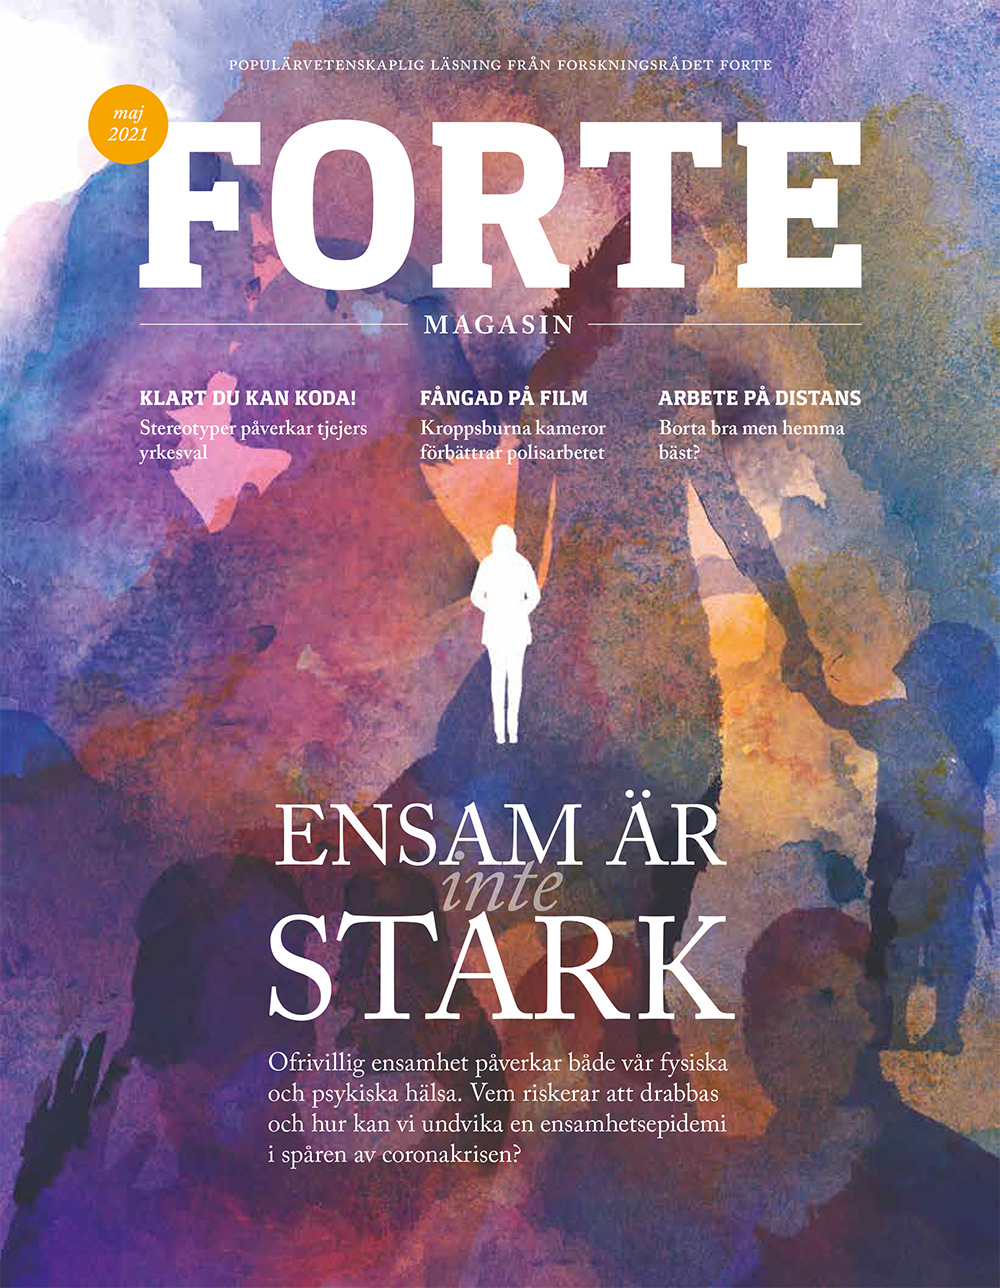 Omslag till Forte Magasin nummer 1/2021